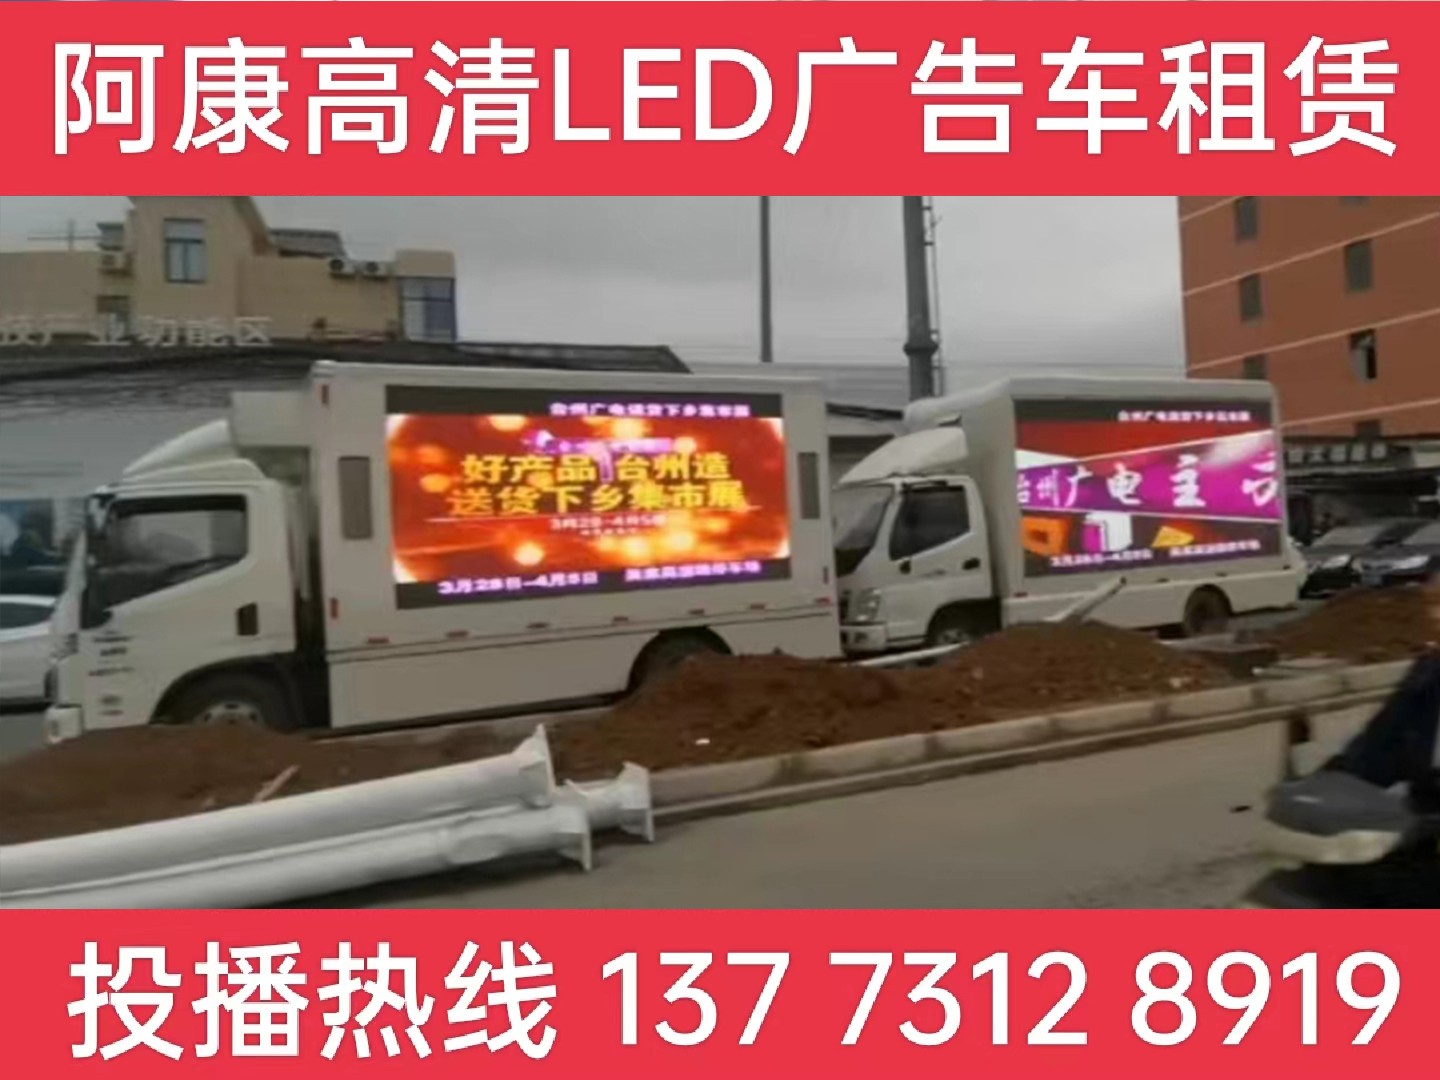 秦淮区LED宣传车租赁